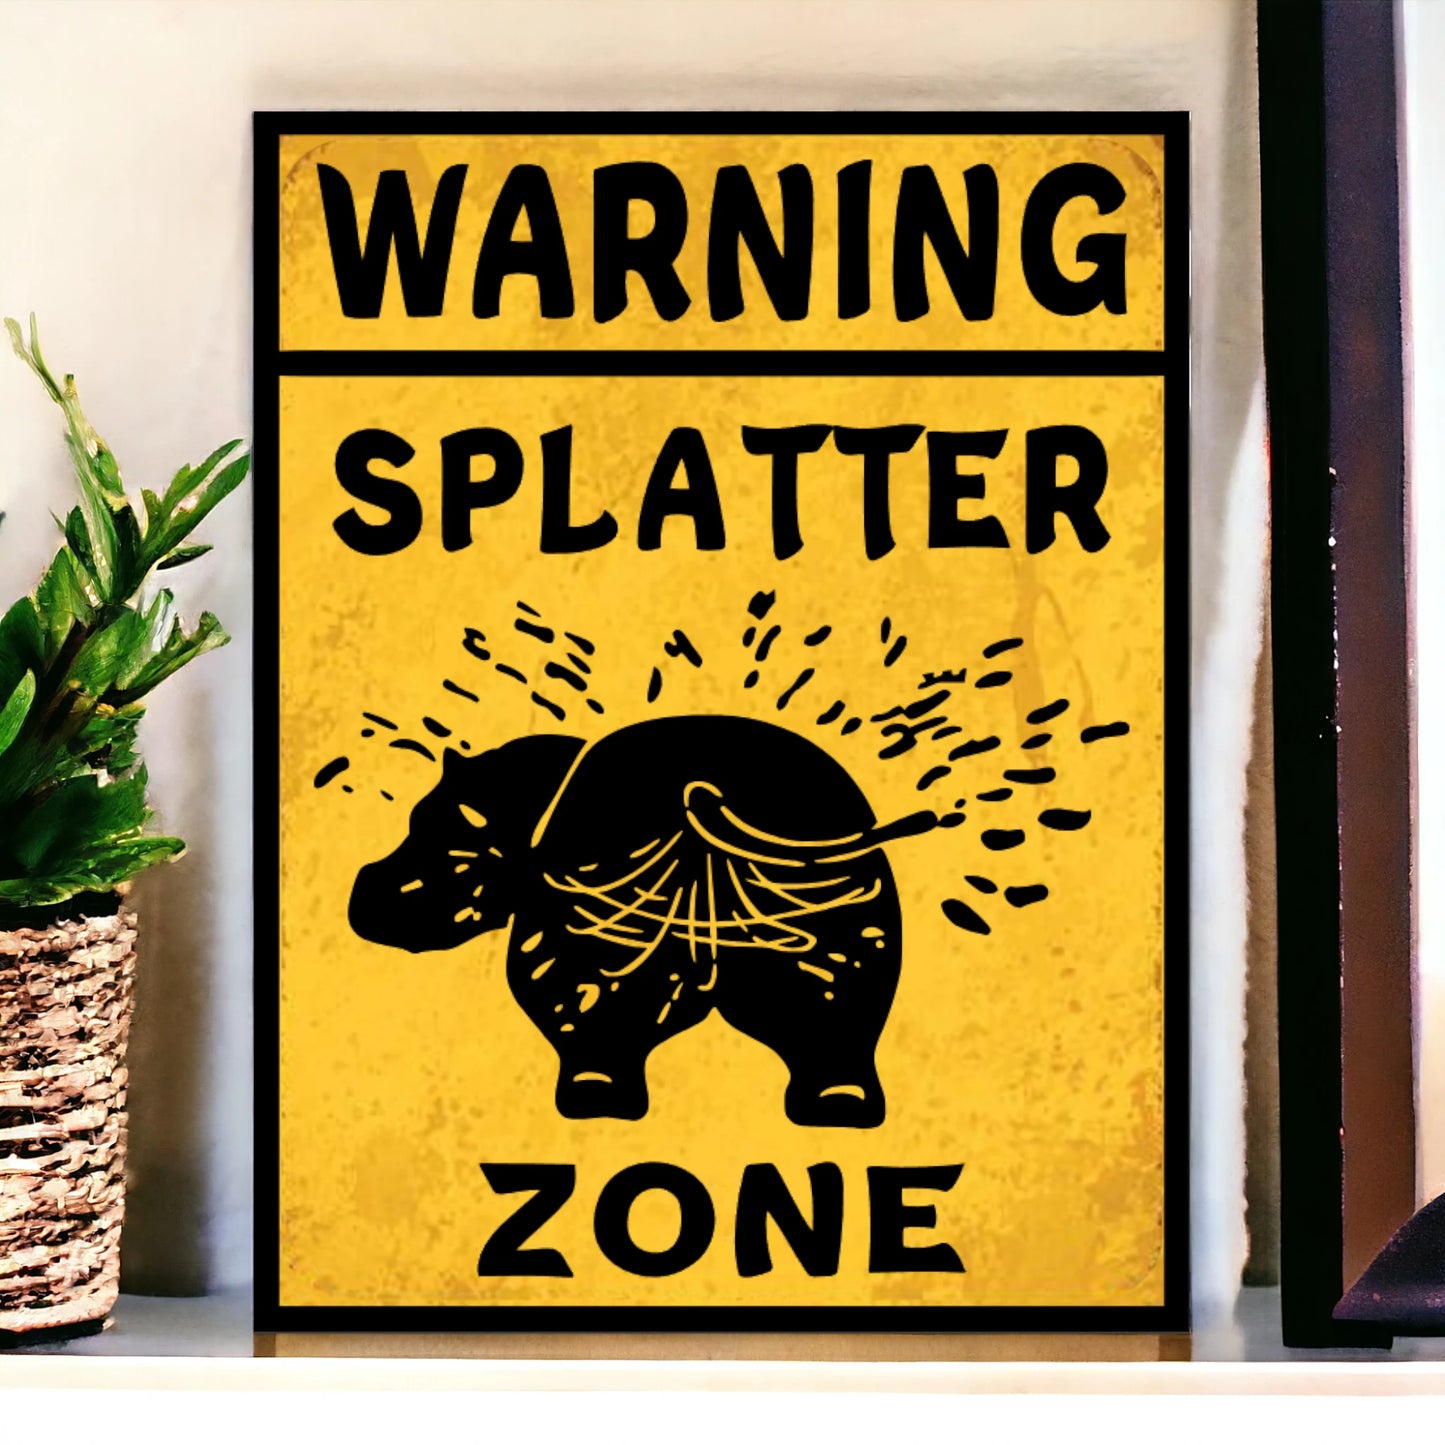 splatter zone sign 